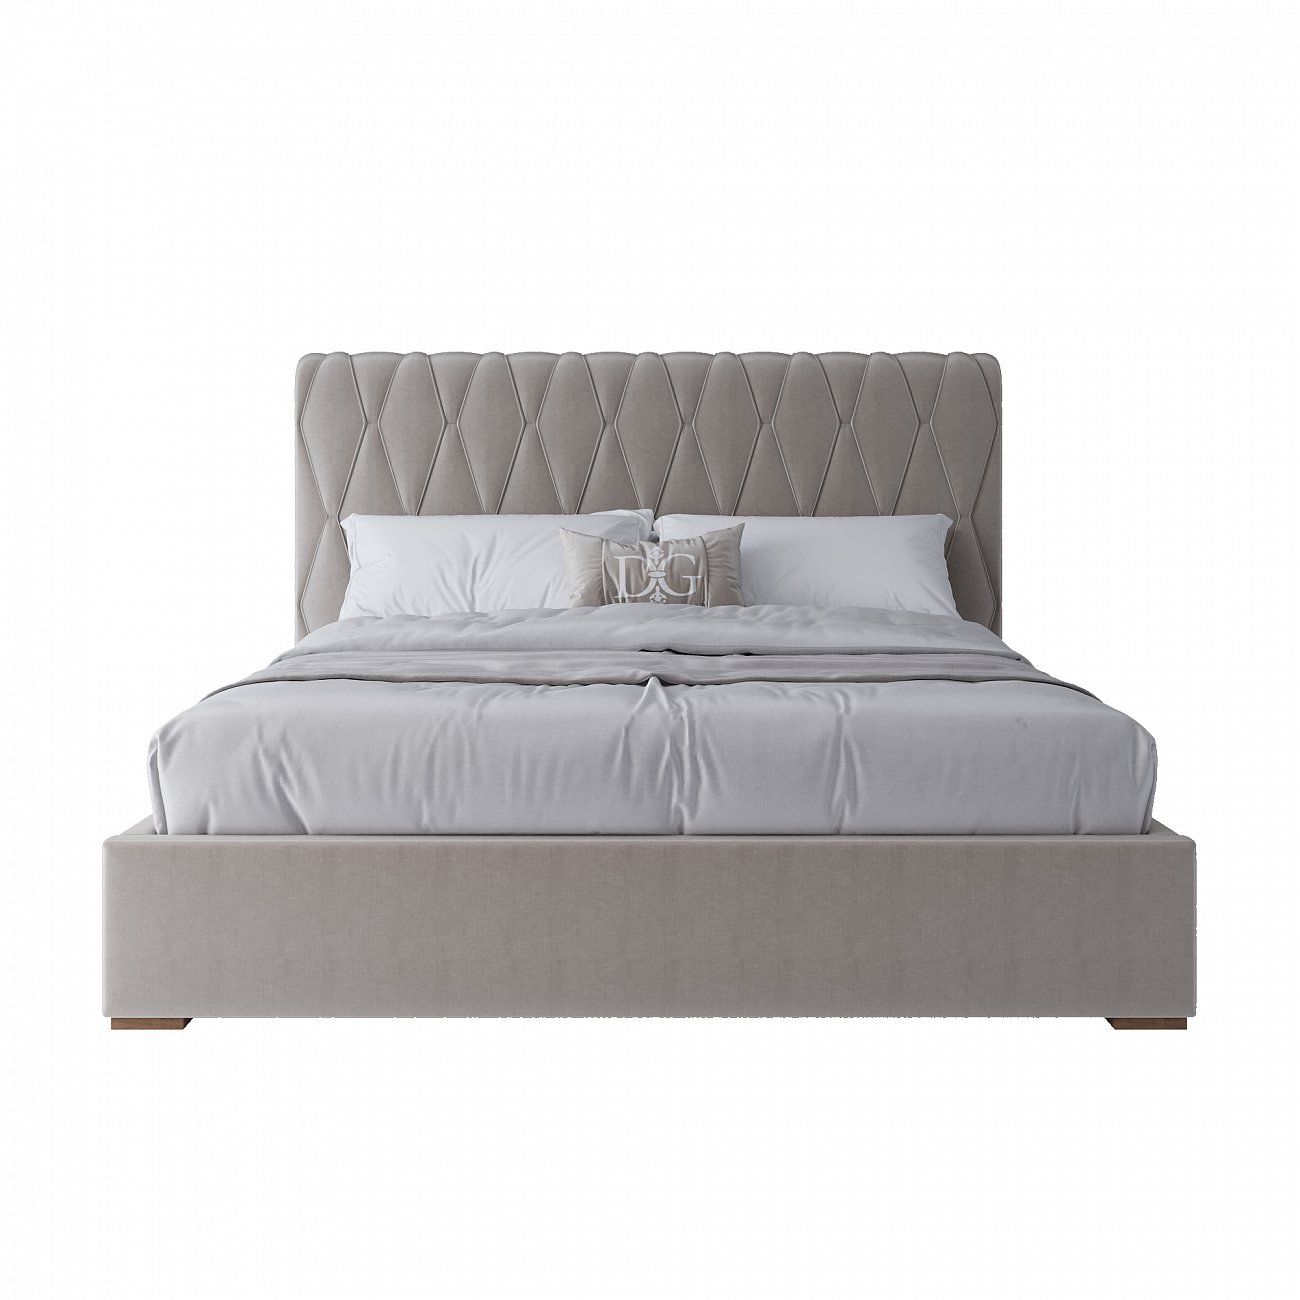 Double bed 180x200 cm beige Bluemoon